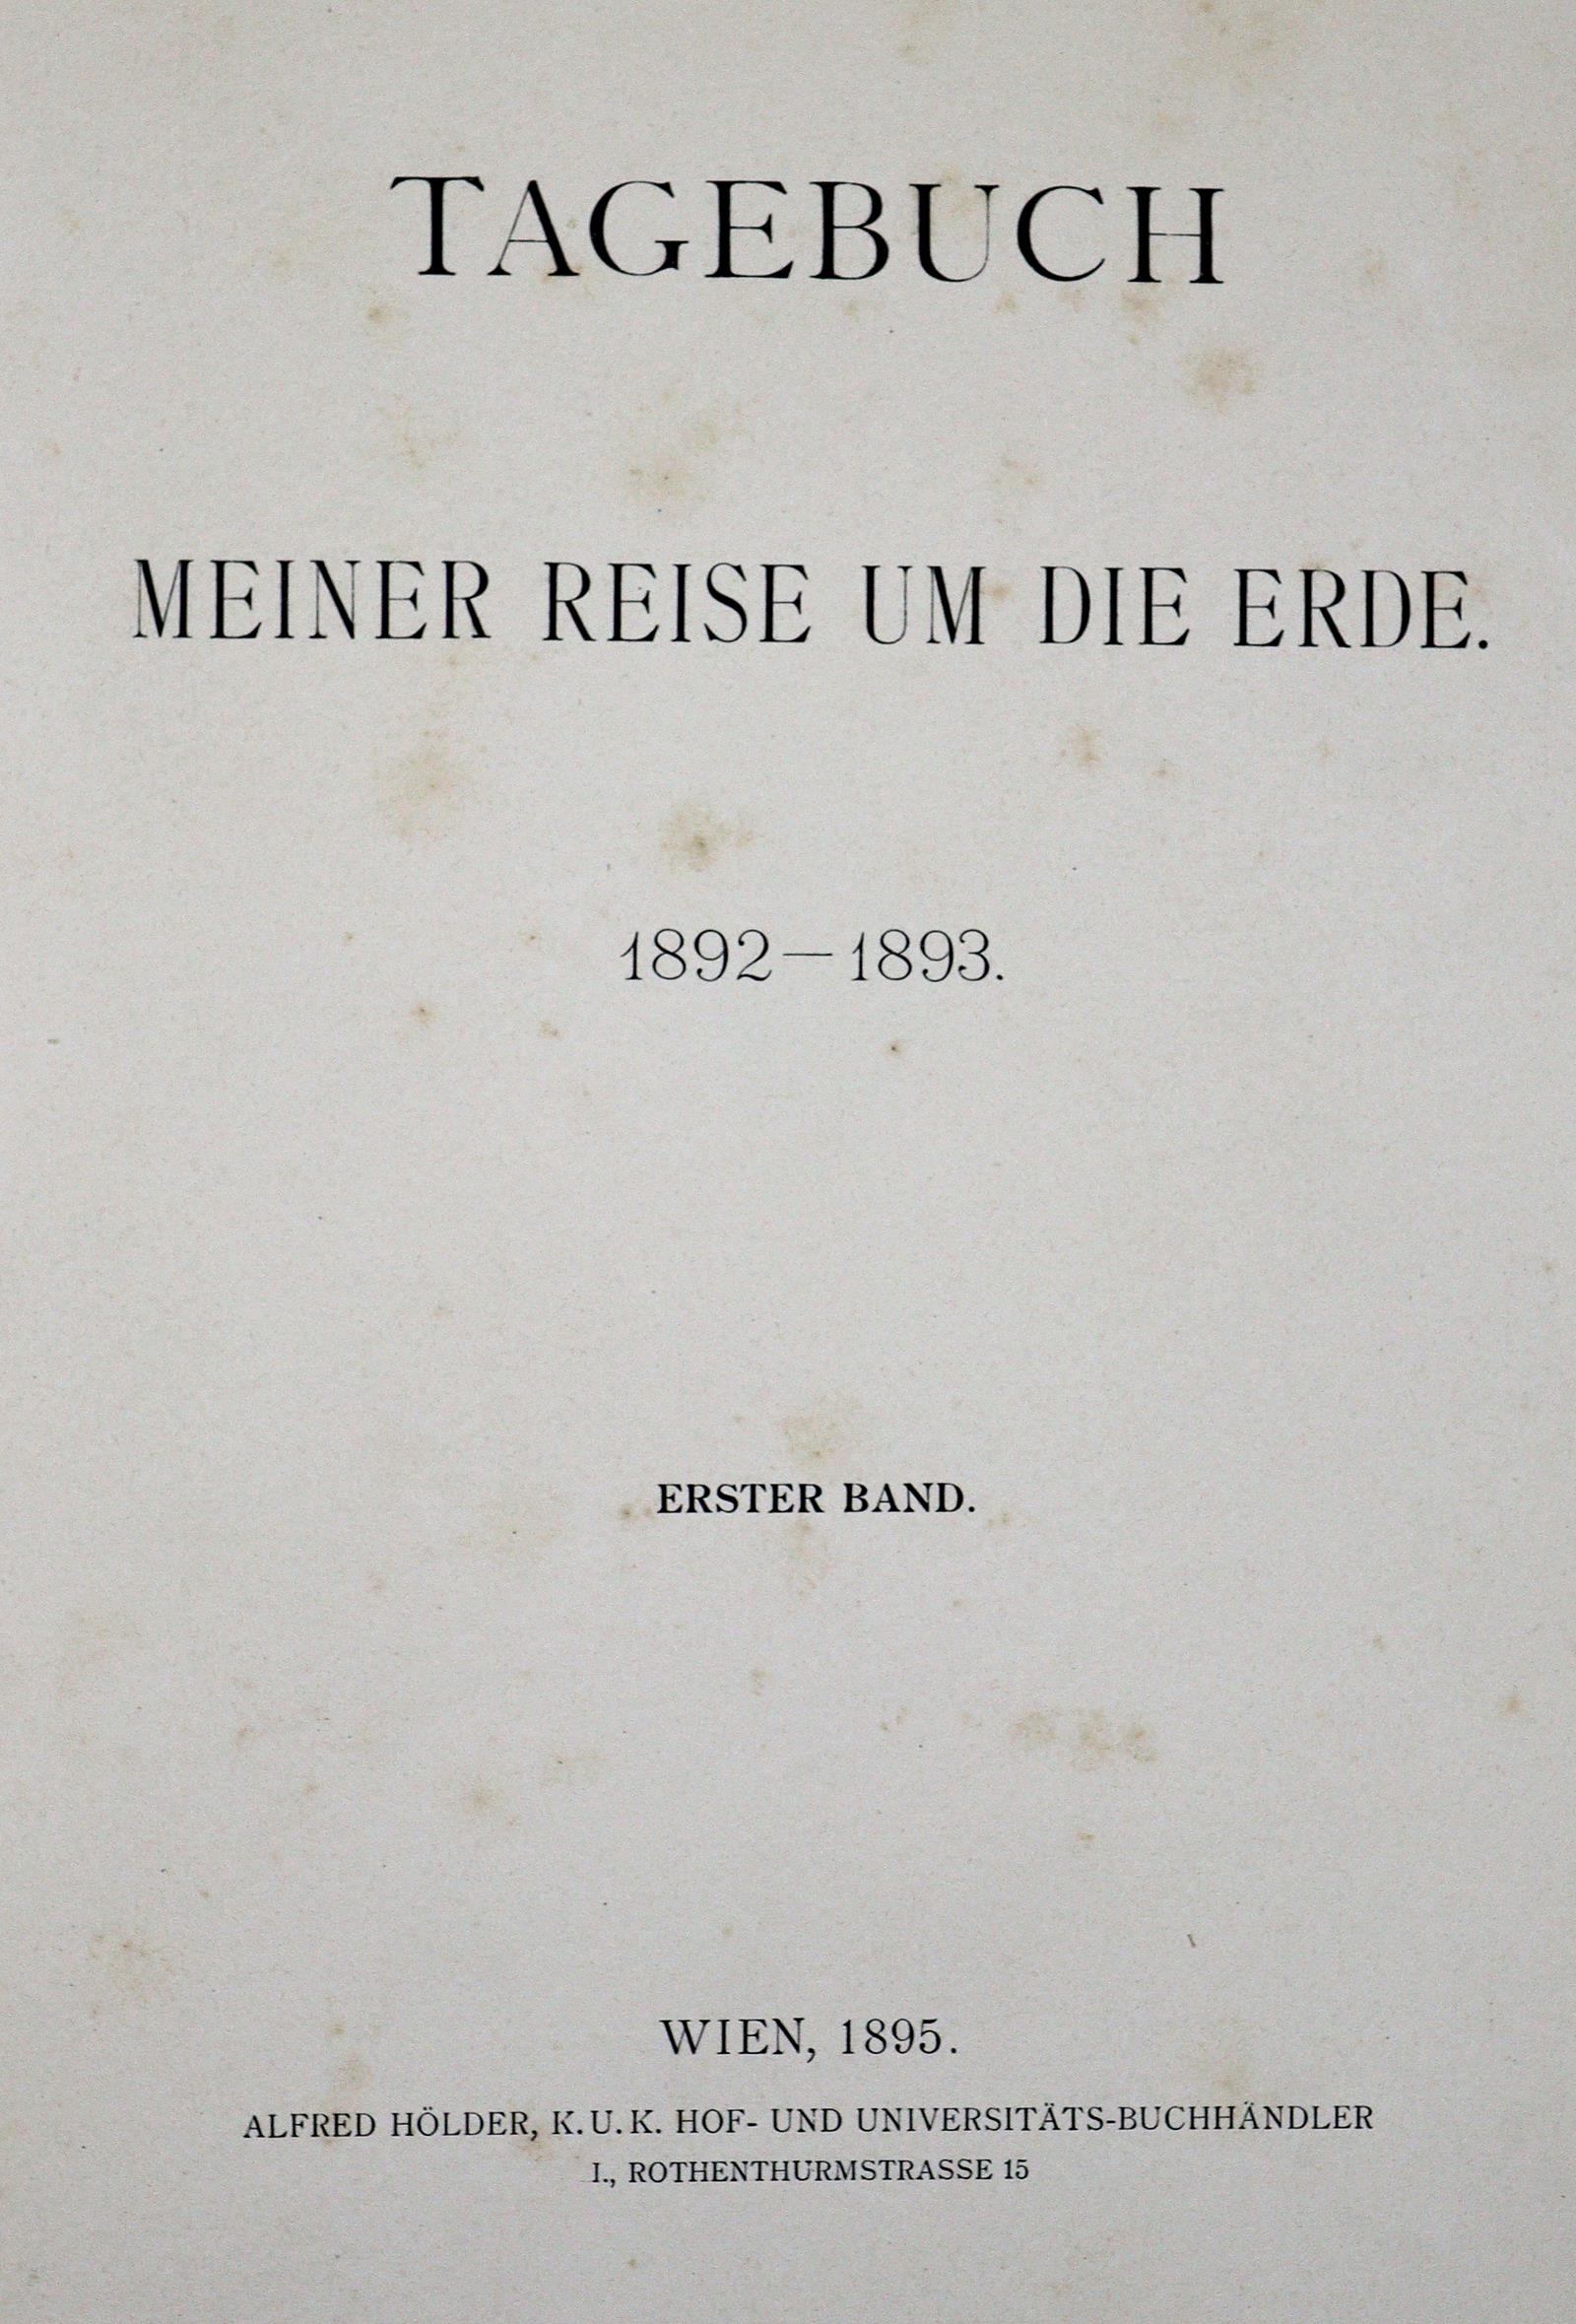 (Franz Ferdinand Erzherzog von Österreich-Este). | Bild Nr.2